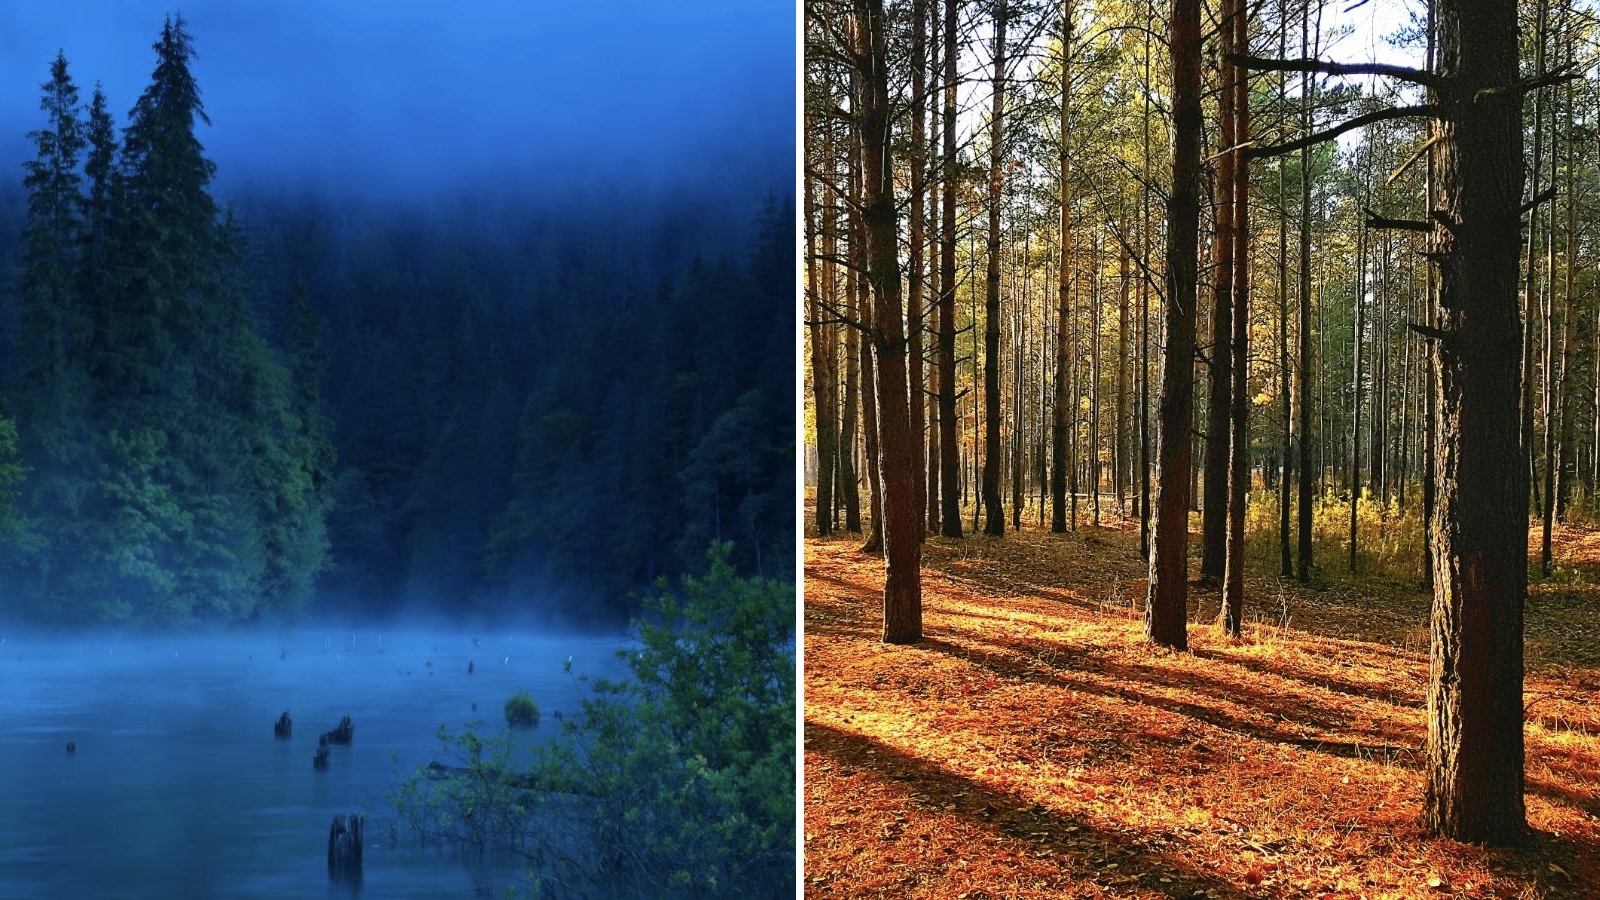 Természetfotózás az erdő mélyén – 5+1 hasznos tanács - Nextfoto